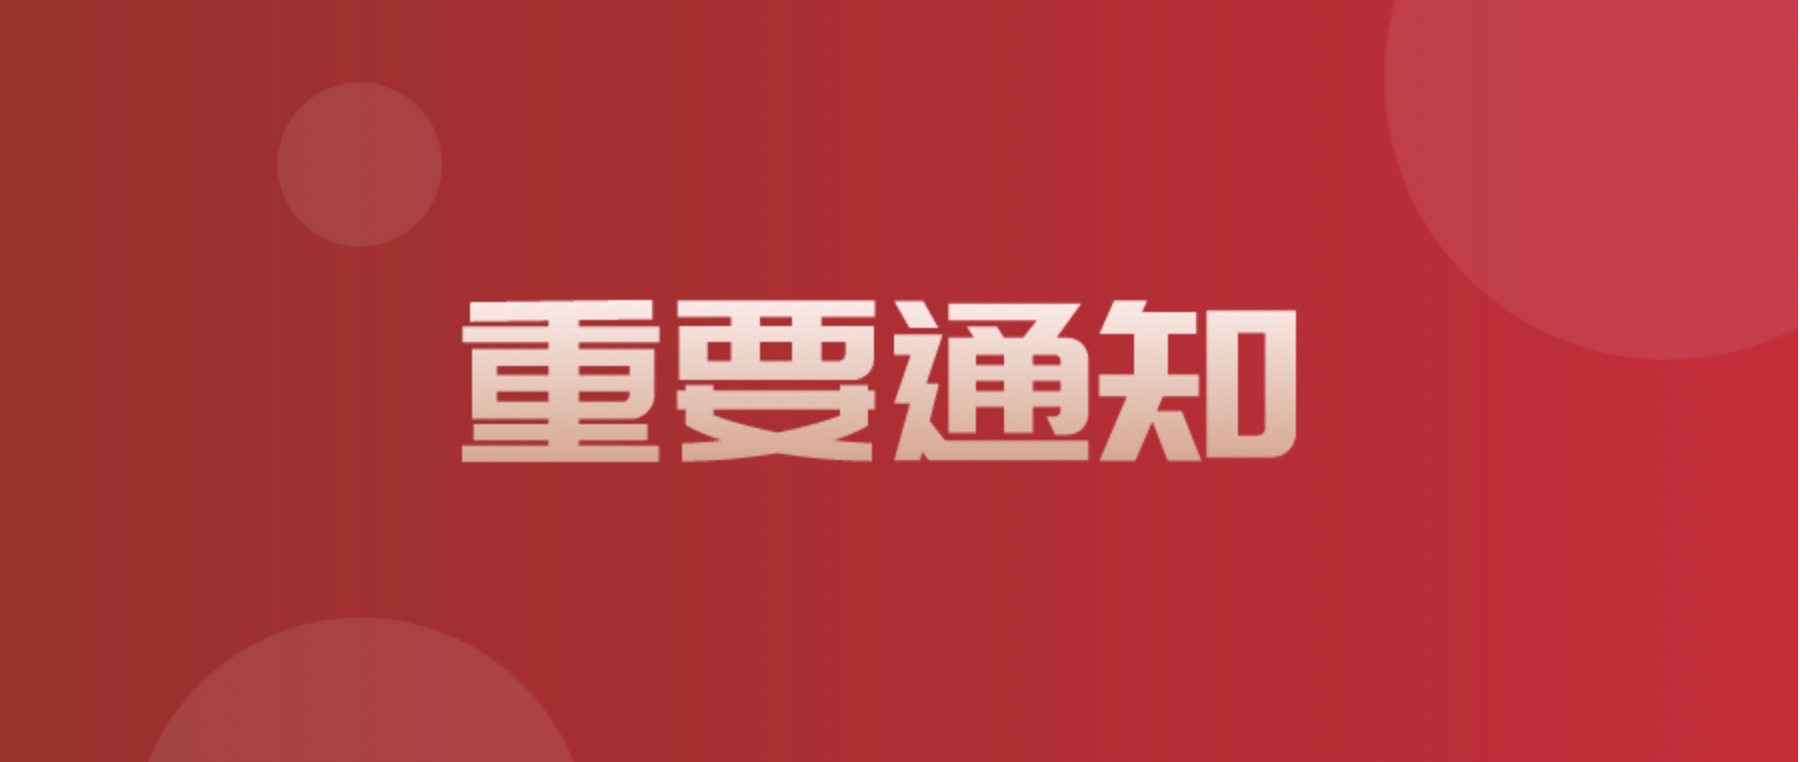 四川省现代物流发展促进会换届选举初步公示具体内容